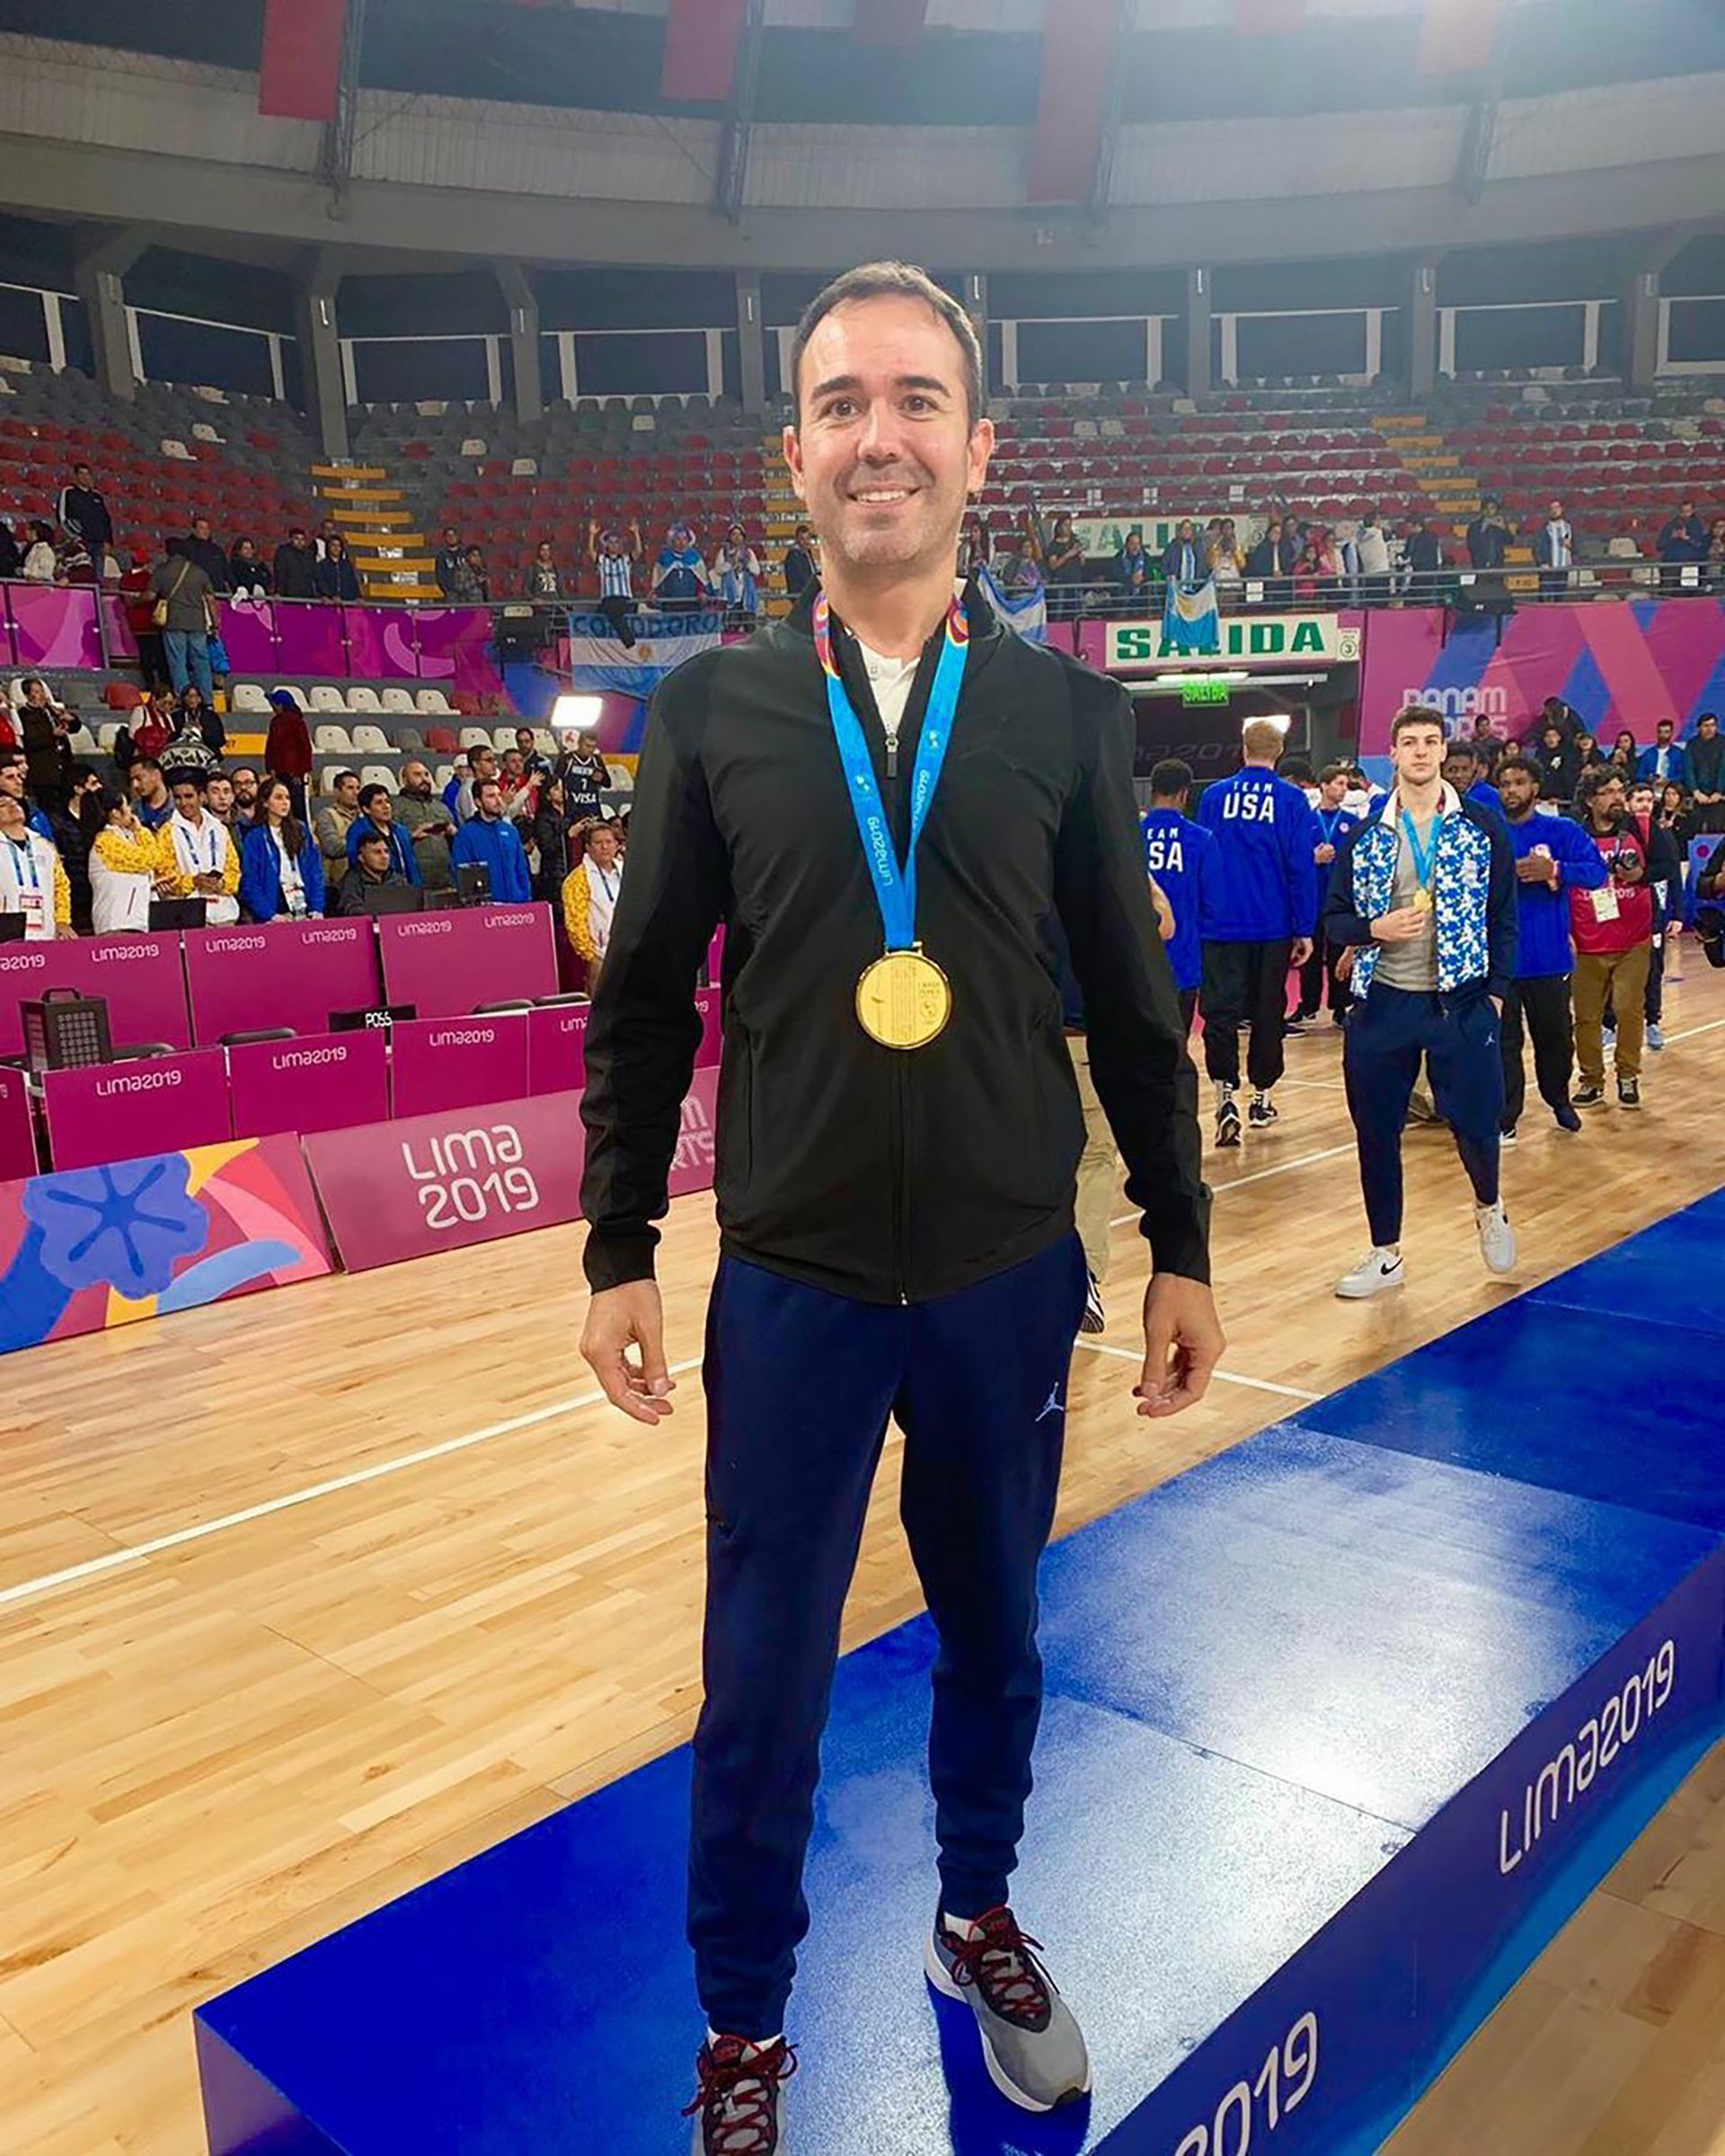 Paulo Maccari es el kinesiologo de la selección masculina de básquet. Aquí, en los Panamericanos de Lima, donde Argentina ganó la medalla de oro (@maccarisports)